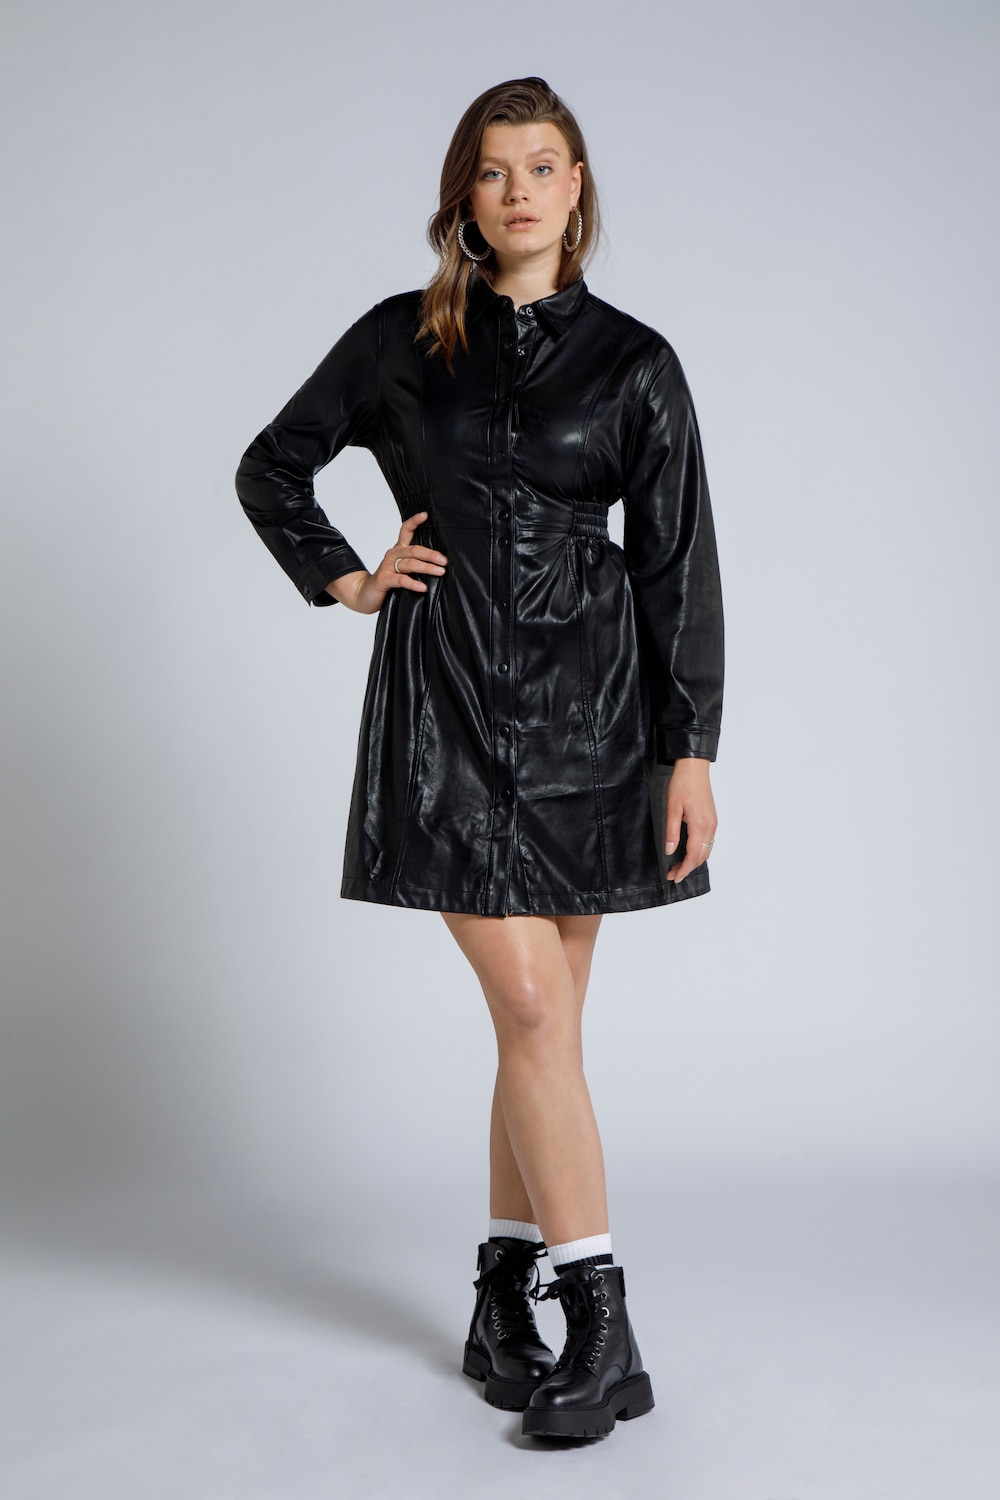 Image of Grosse Grössen Lederoptik Kleid, Damen, schwarz, Größe: 42/44, Synthetische Fasern, Studio Untold